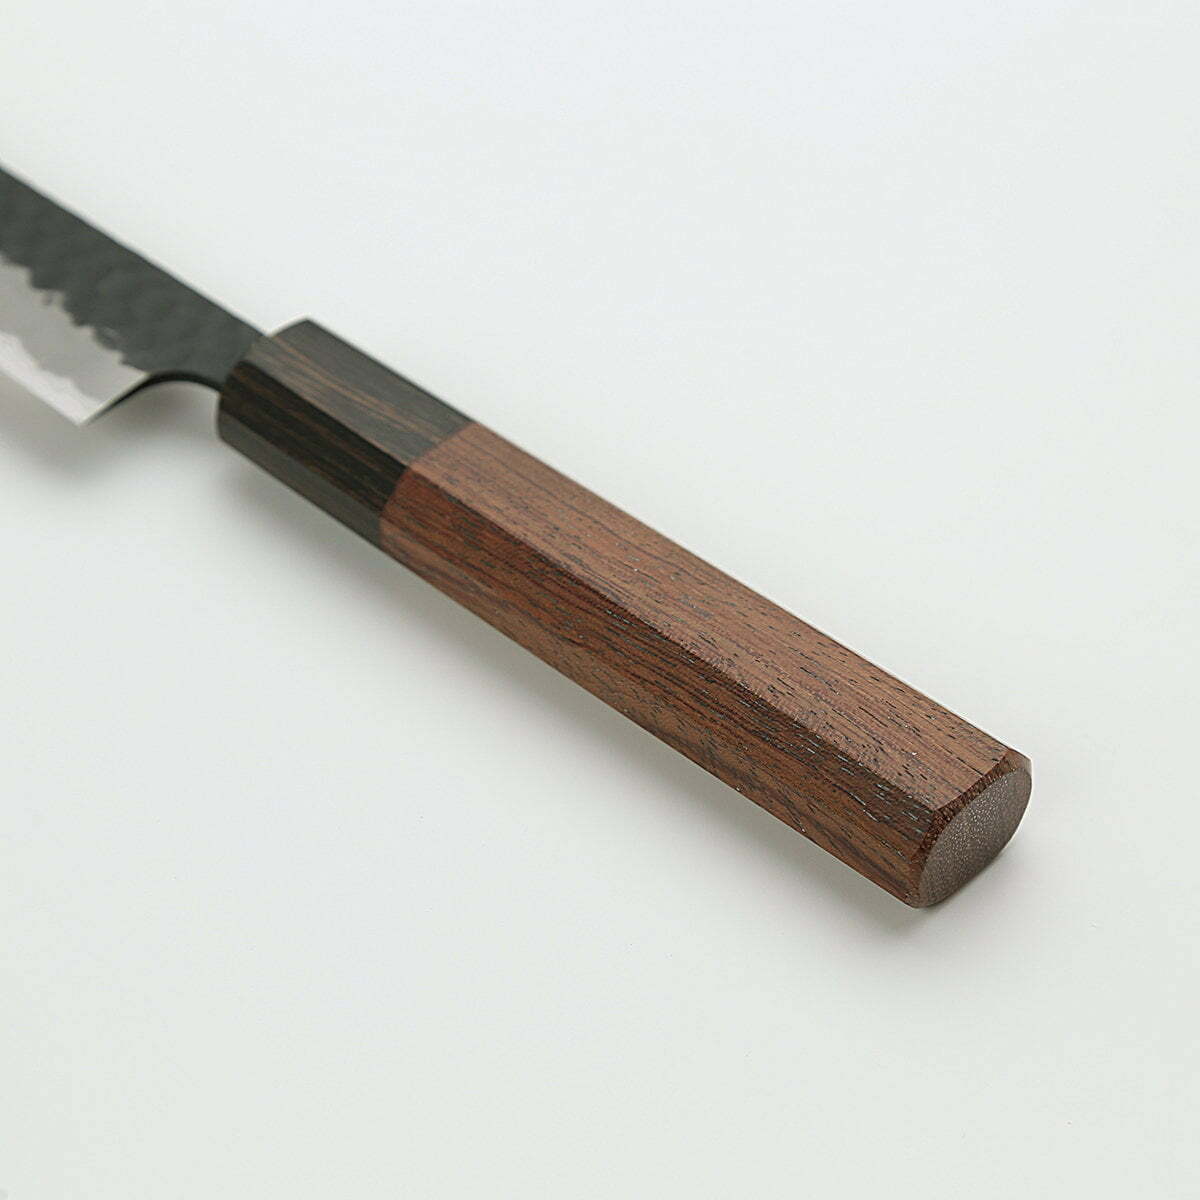 סכין עזר קטנה רב-תכליתית קִּירִיצוּקֶה פֶּטִי 125מ״מ מחוזקת 3 שכבות: פלדת פחמן יפנית מתקדמת מסוג Aogami Super עטופה פלדת אל-חלד גימור קורואיצ׳י שחור עם ריקוע פטיש ג׳יקו סאקאיי יפן